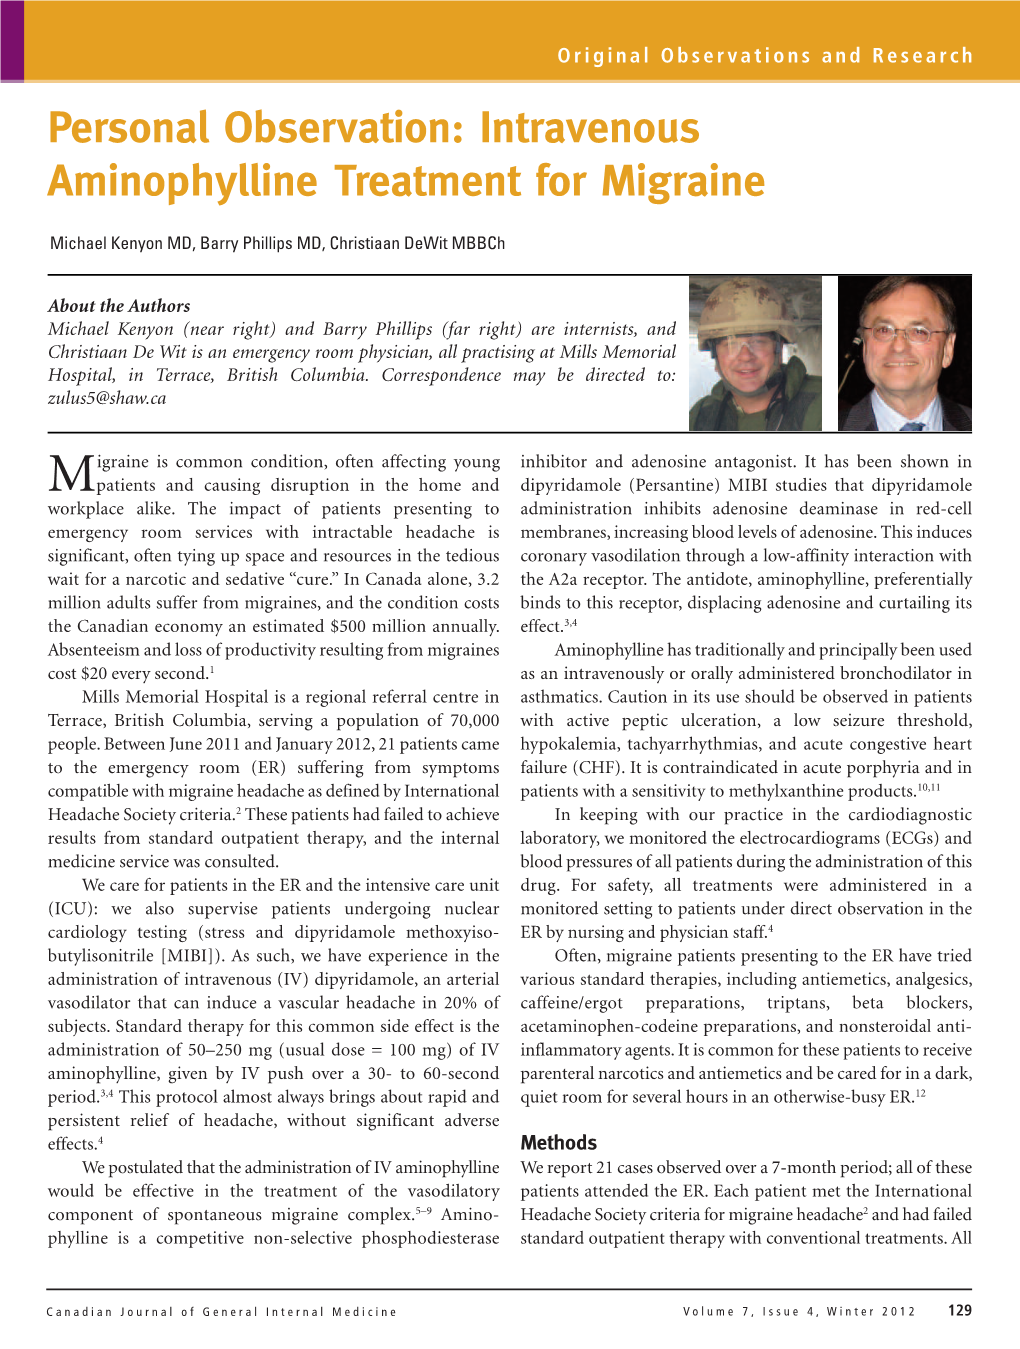 Intravenous Aminophylline Treatment for Migraine